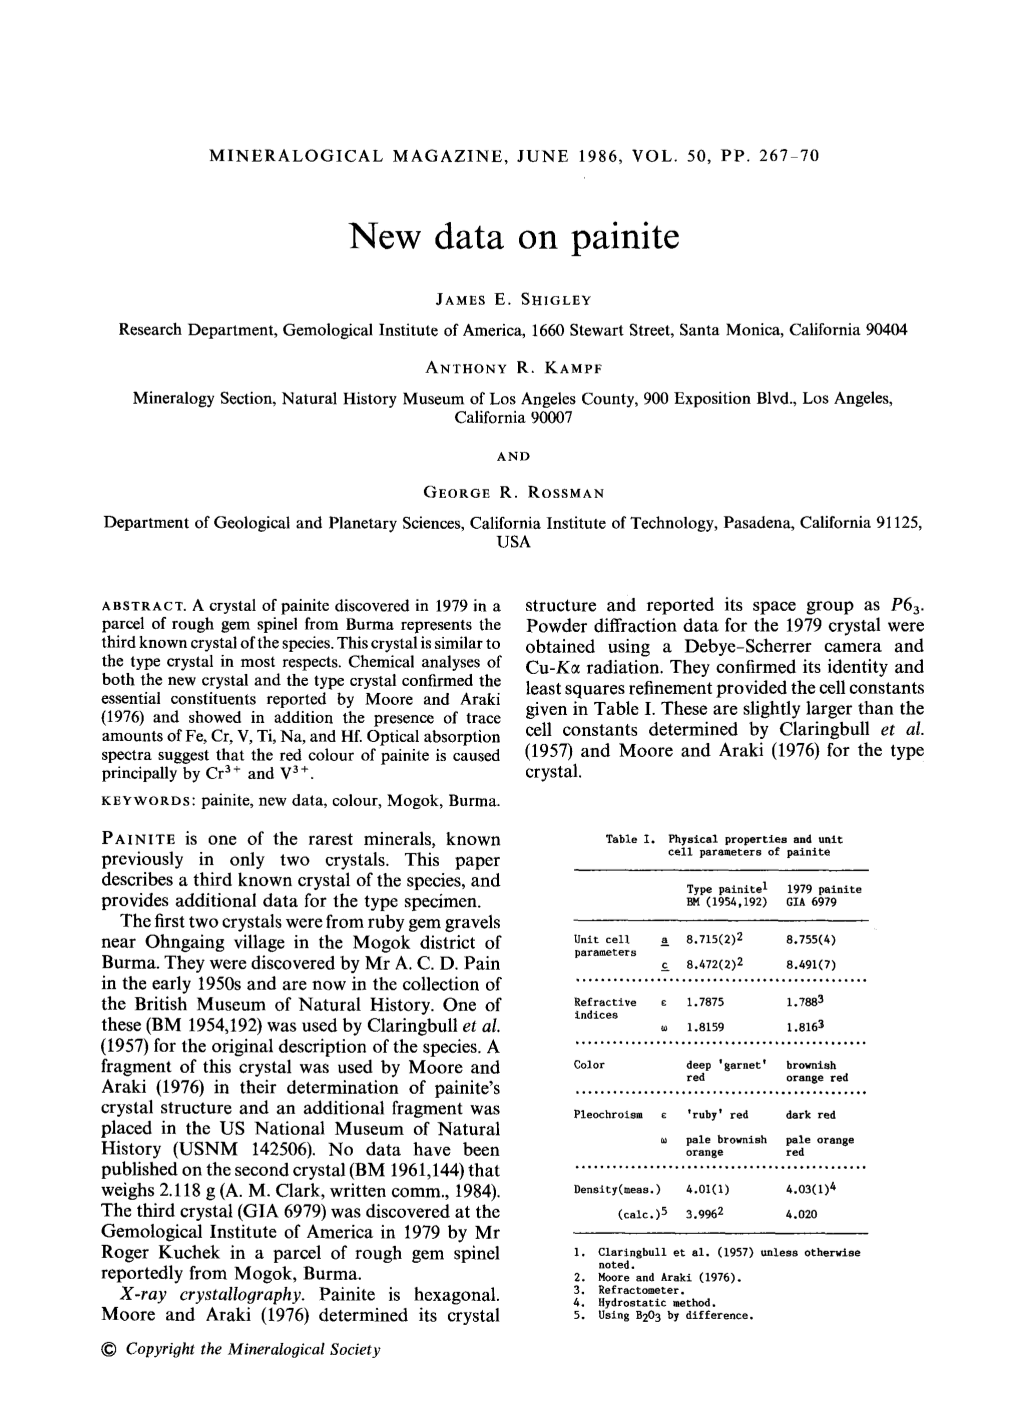 New Data on Painite